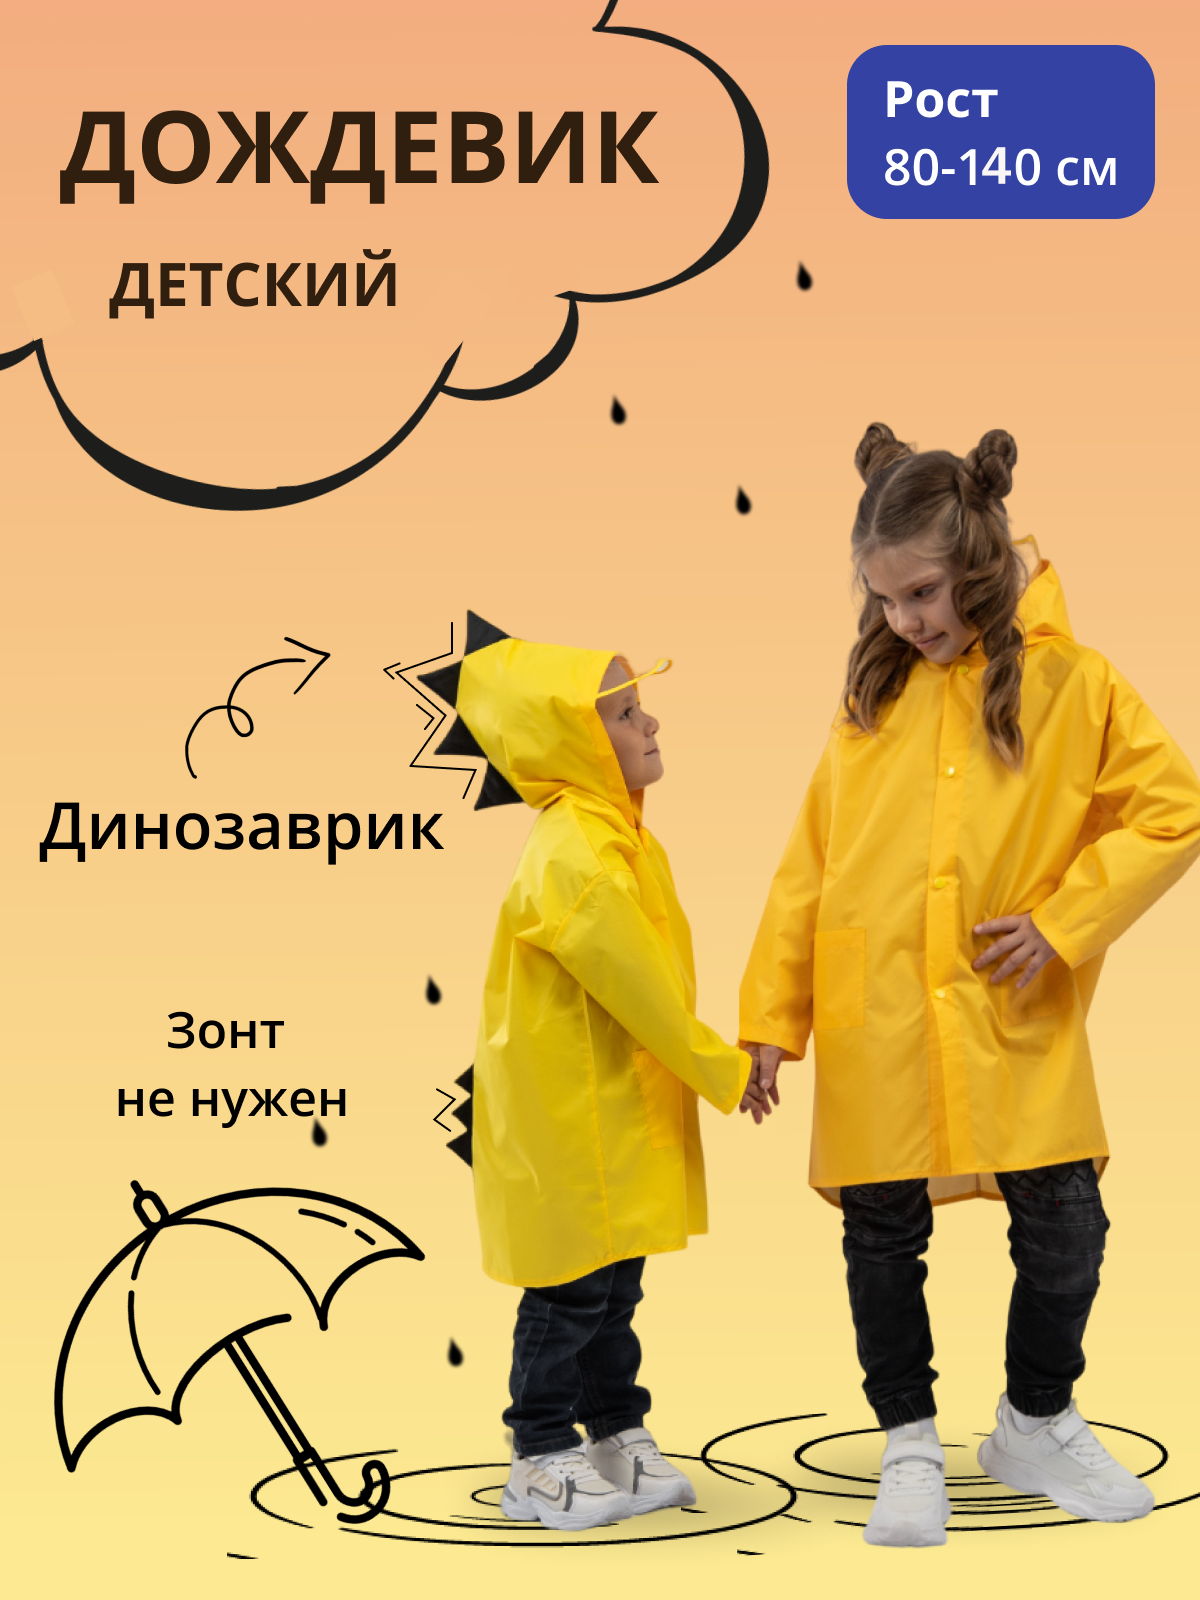 Дождевик детский Под дождем 122855956, желтый, 104 дождевик пончо взрослый тонкий желтый